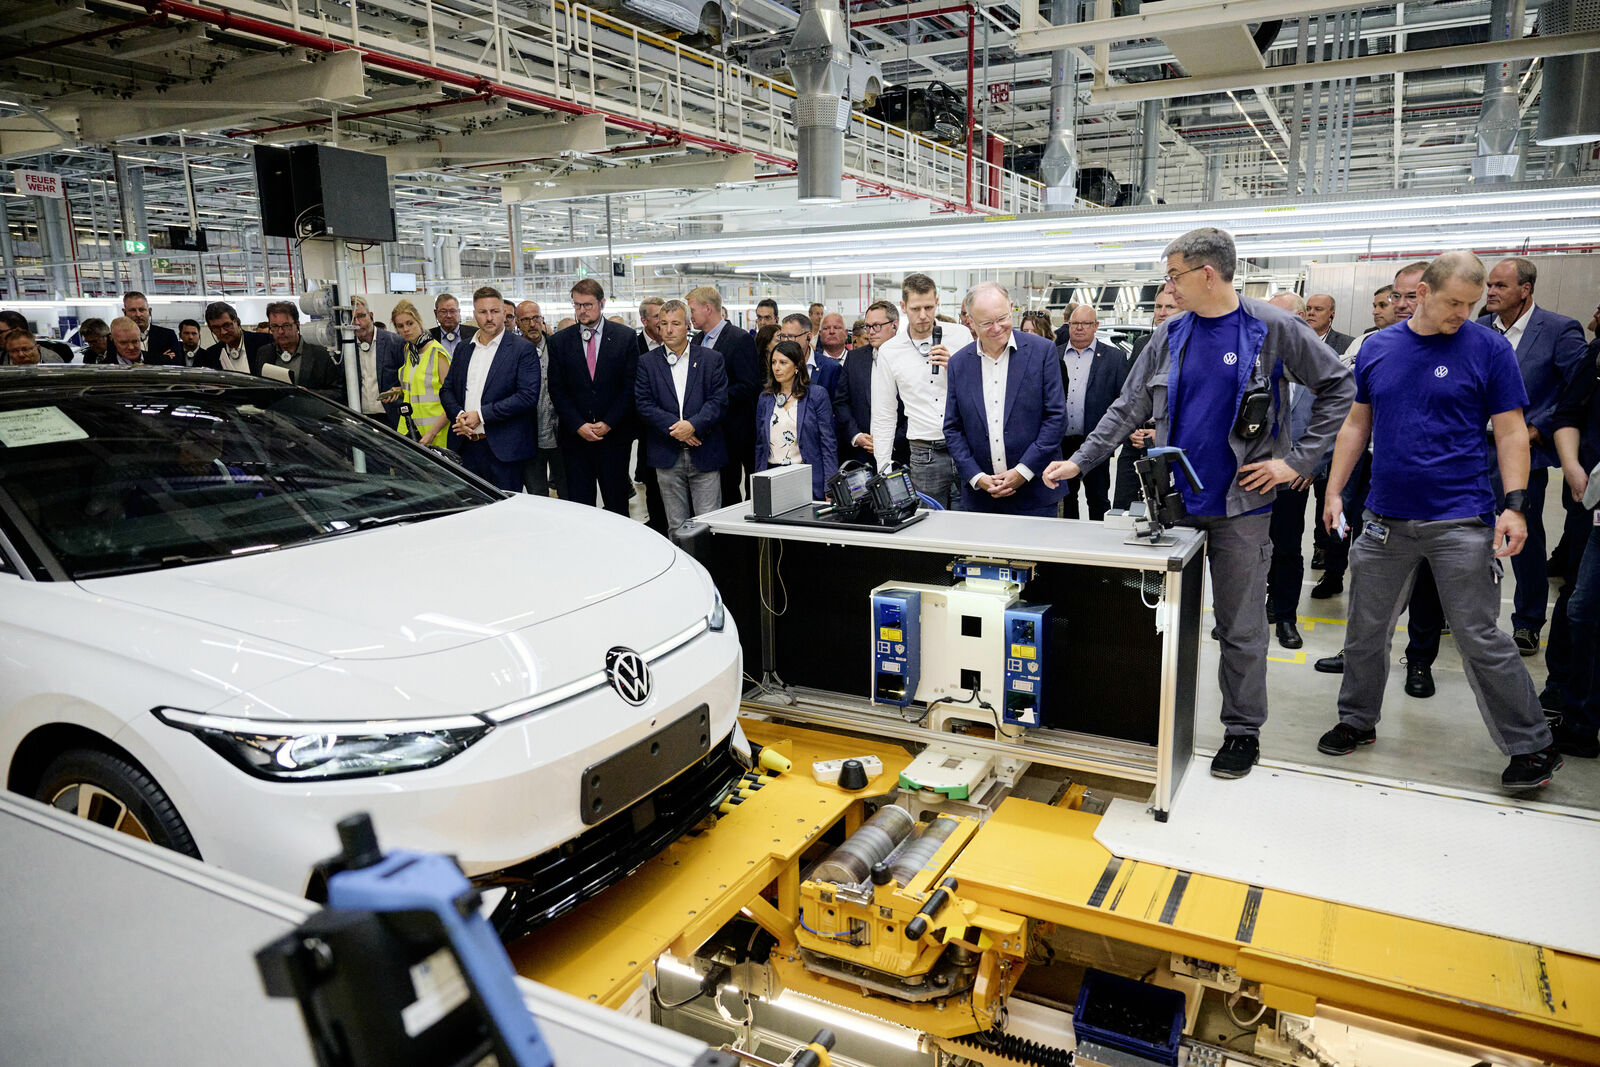 Das vollelektrische Weltauto aus Emden: Volkswagen fährt Produktion des ID.7 hoch